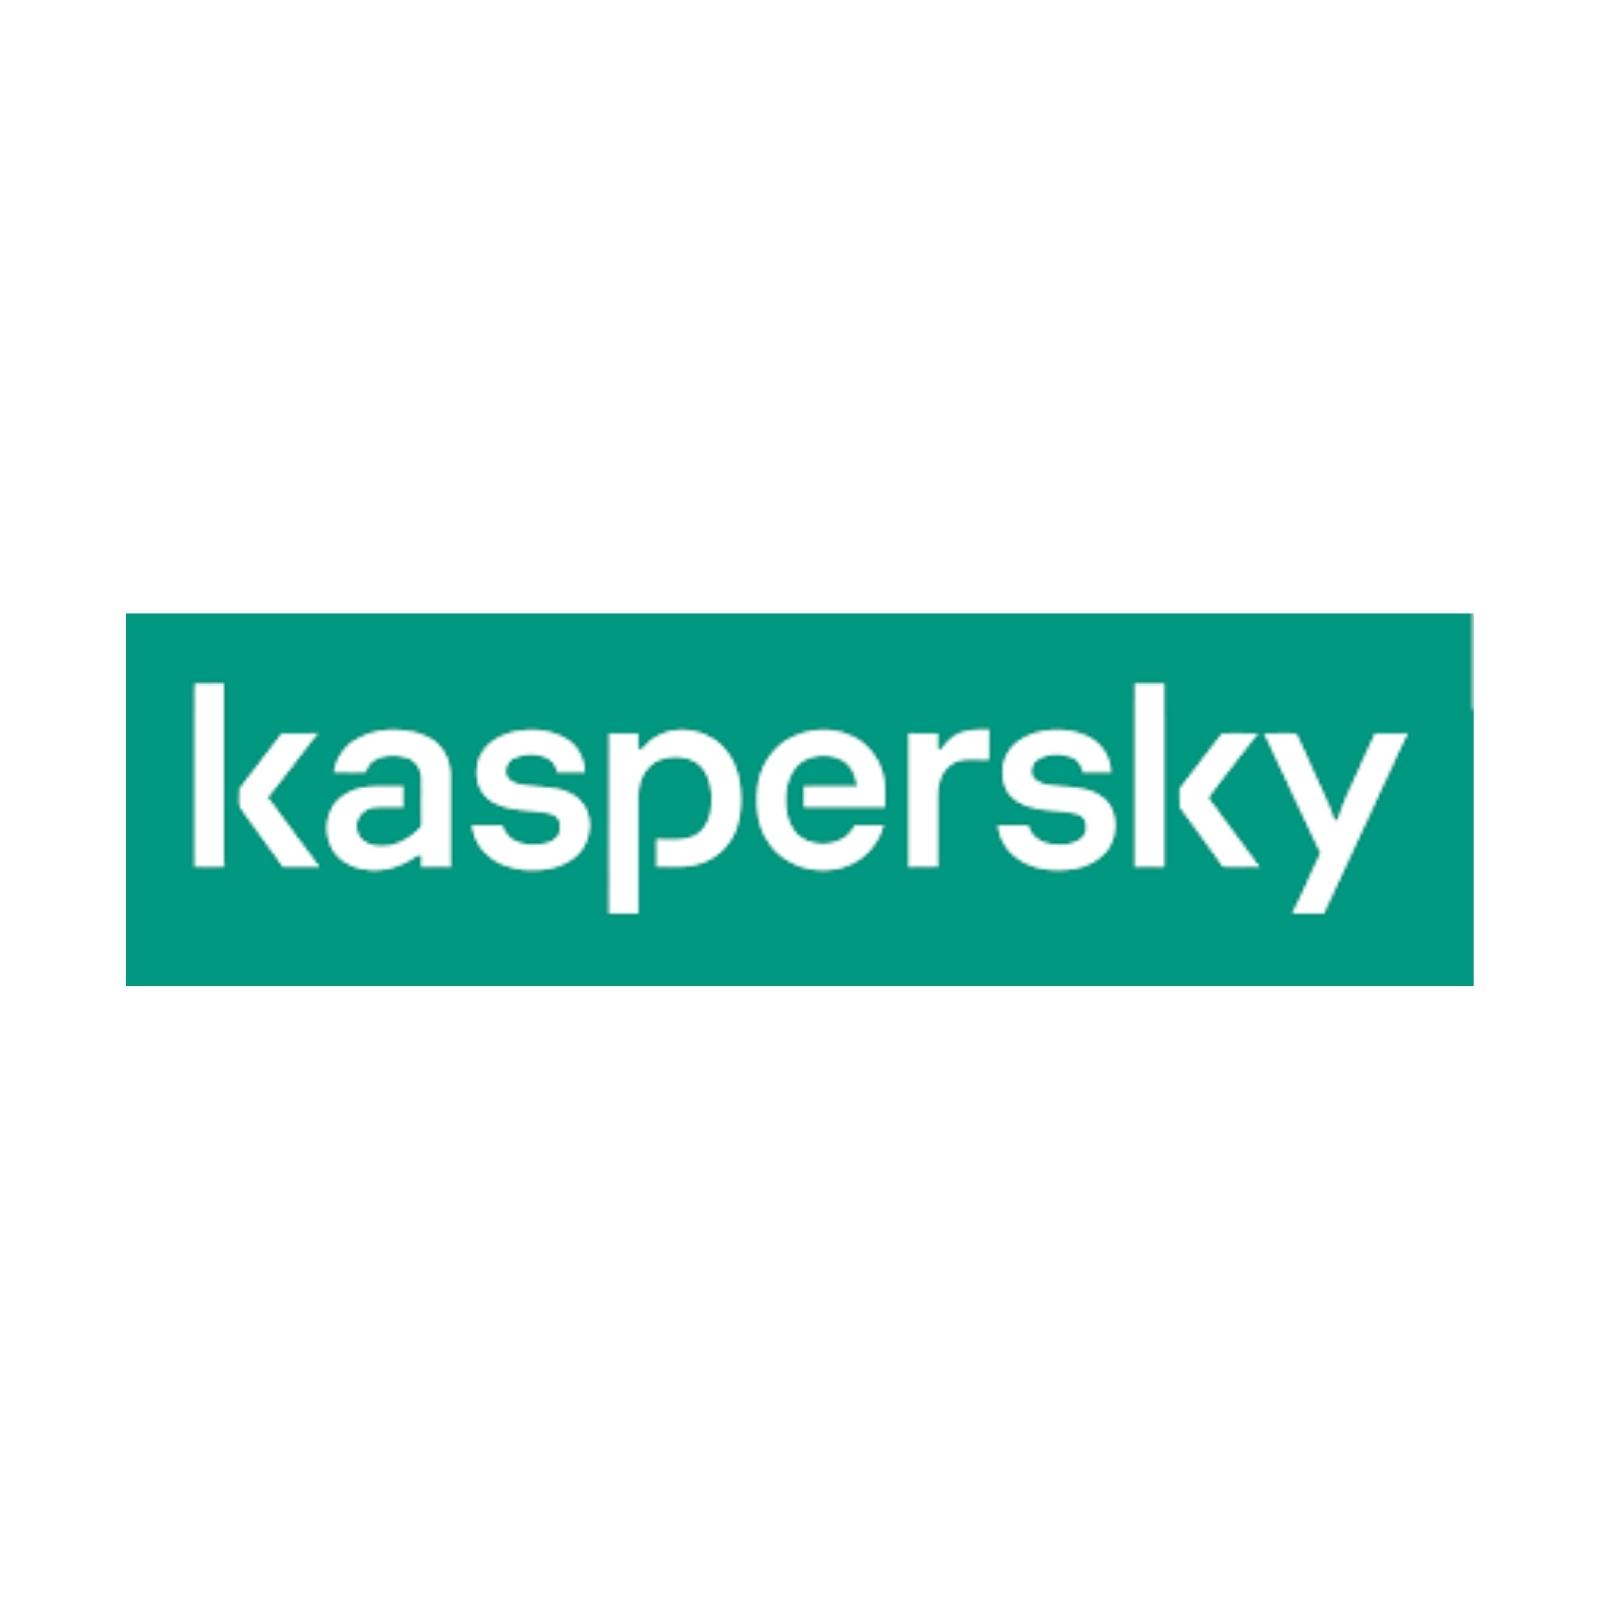 Kaspersky Giải pháp An ninh Mạng cho Gia đình & Doanh nghiệp